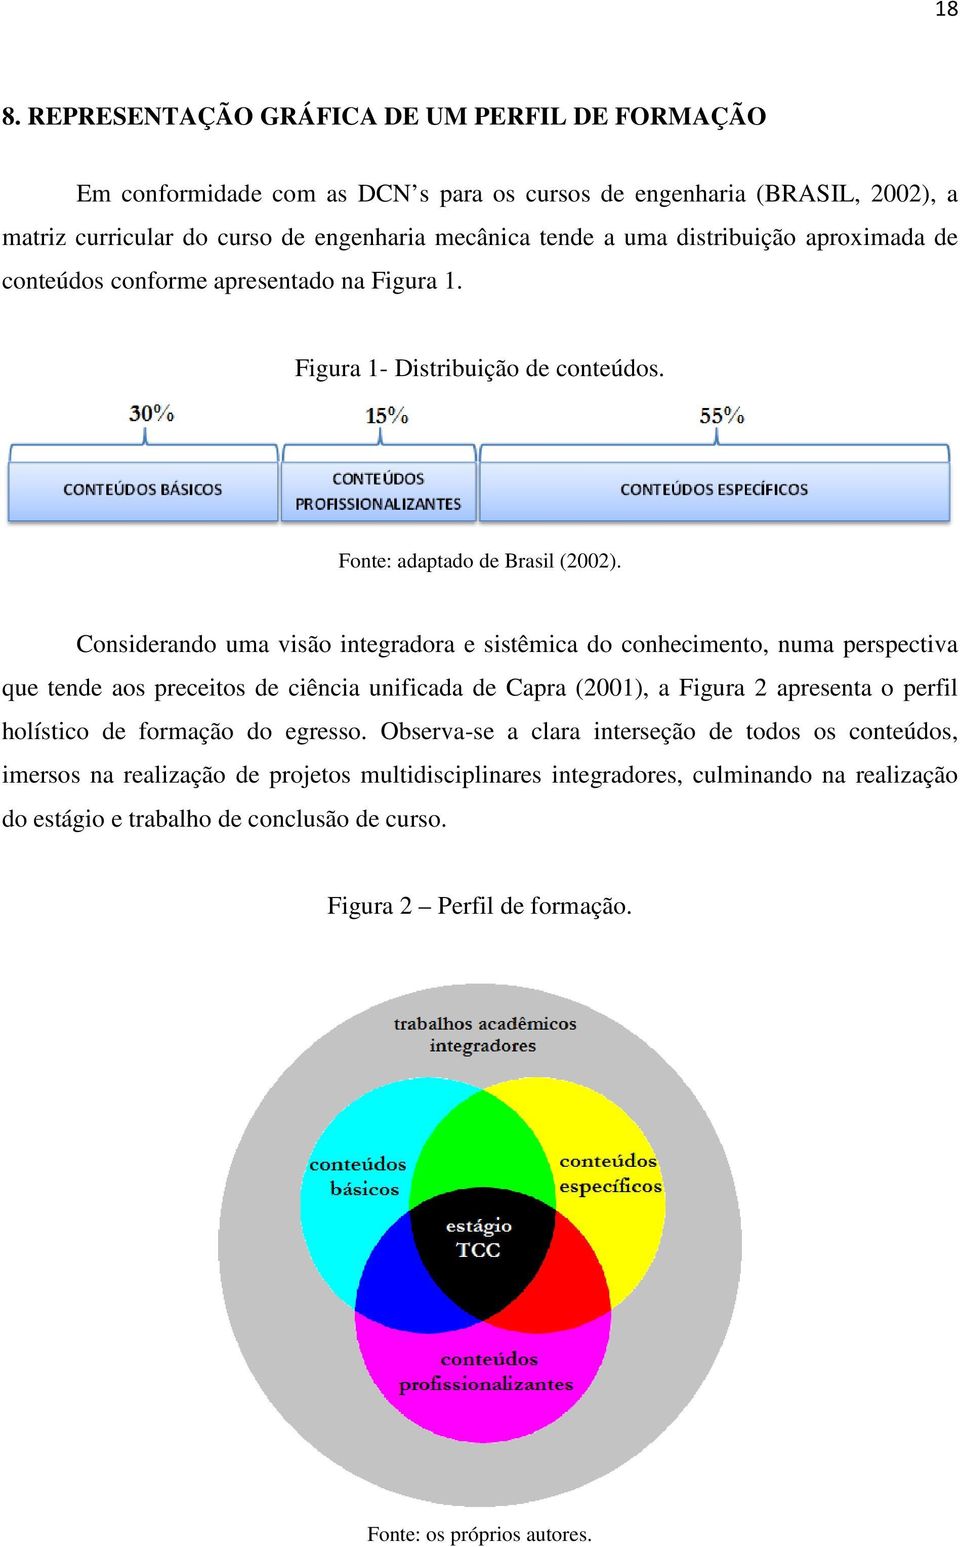 Considerando uma visão integradora e sistêmica do conhecimento, numa perspectiva que tende aos preceitos de ciência unificada de Capra (2001), a Figura 2 apresenta o perfil holístico de formação